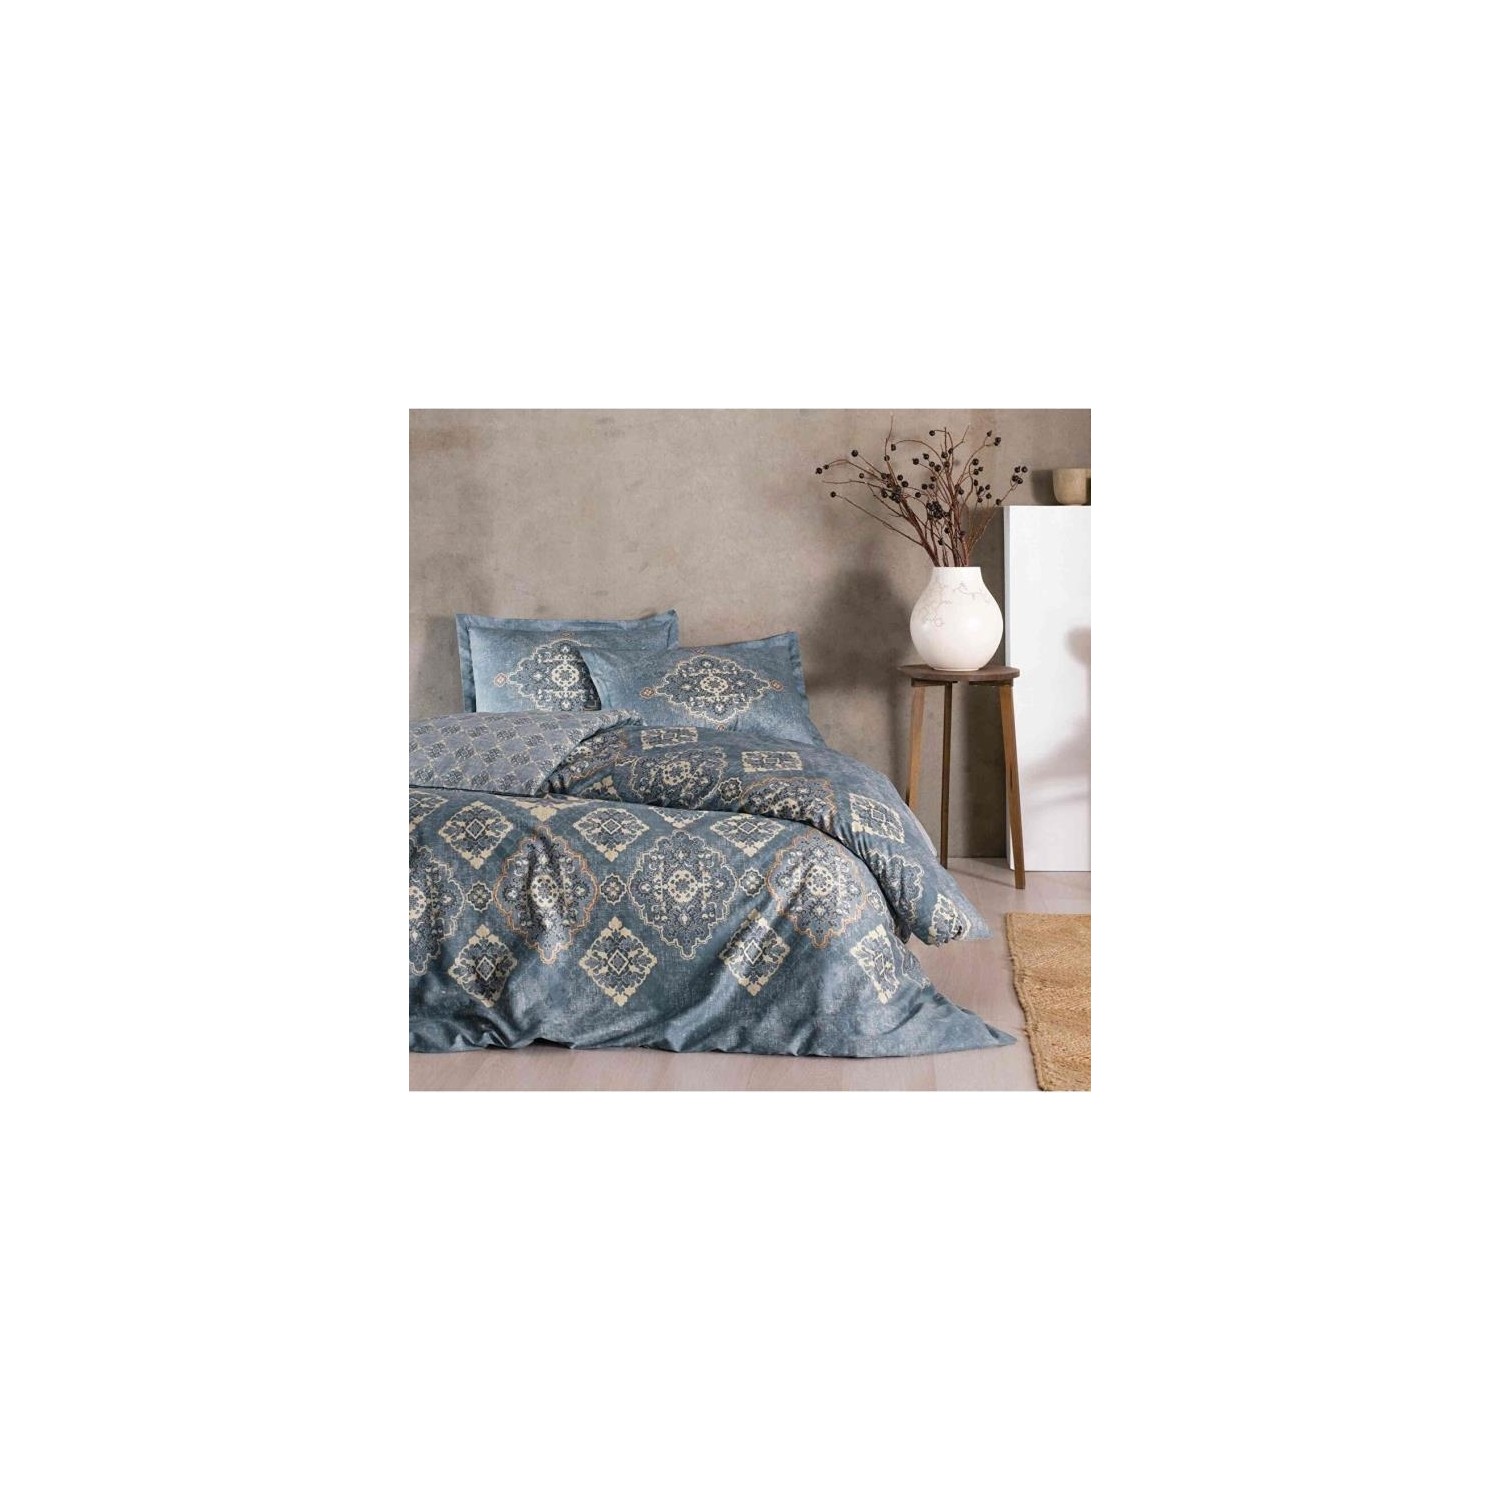 

Комплект постельного белья из хлопка и атласа Tac Marilla, темно-синий, двойной